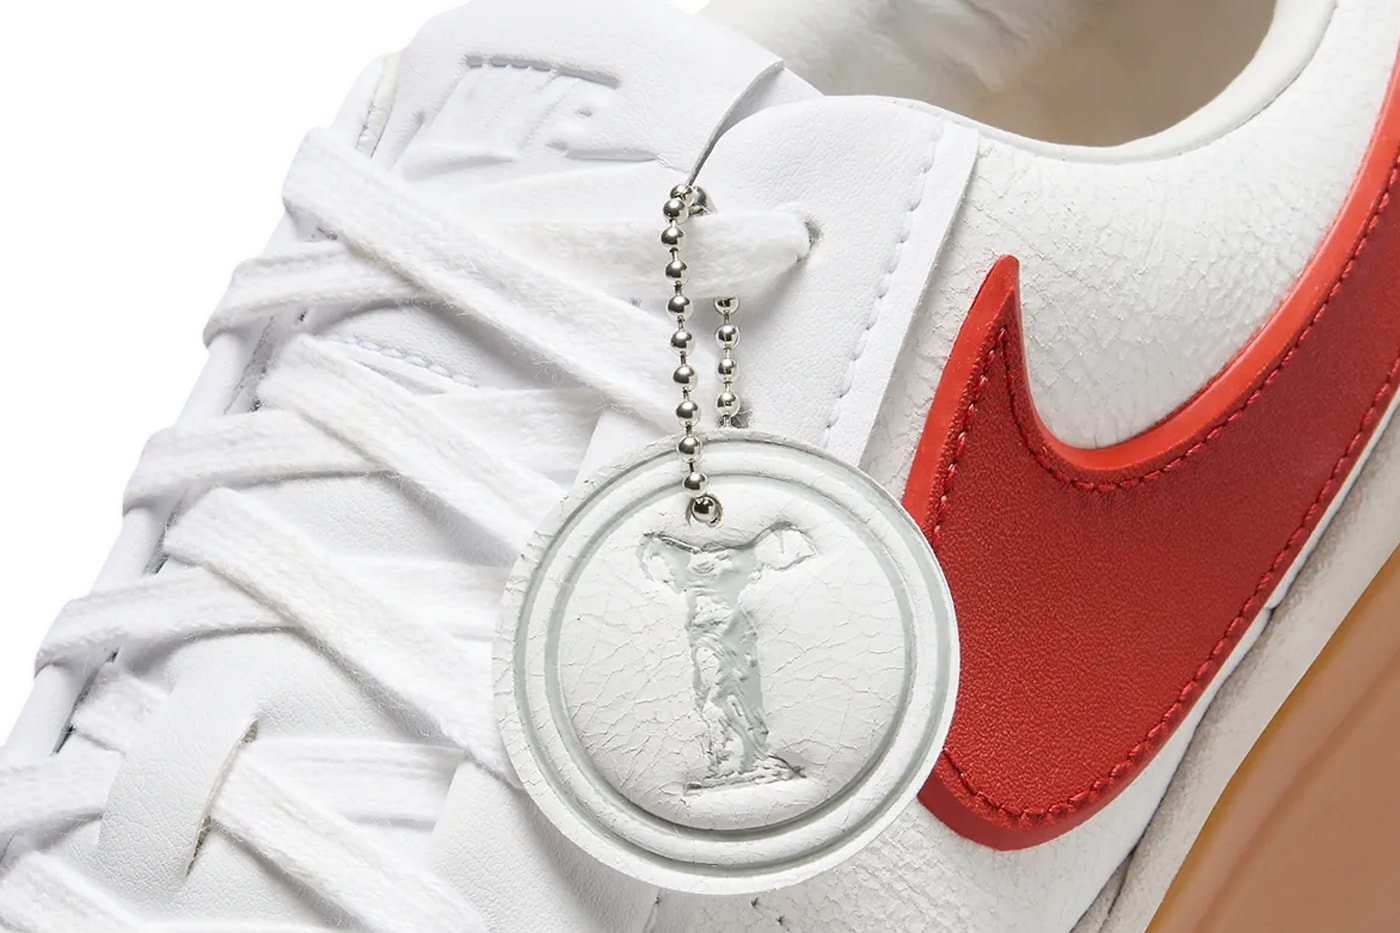 ナイキから立体的なスウッシュを備えた新型モデル ブレザーファントムローが登場 Official Look Nike Blazer Phantom Low in "White/Red" FN5820-100 goddess of victory low-top shoes hangtag sneakers